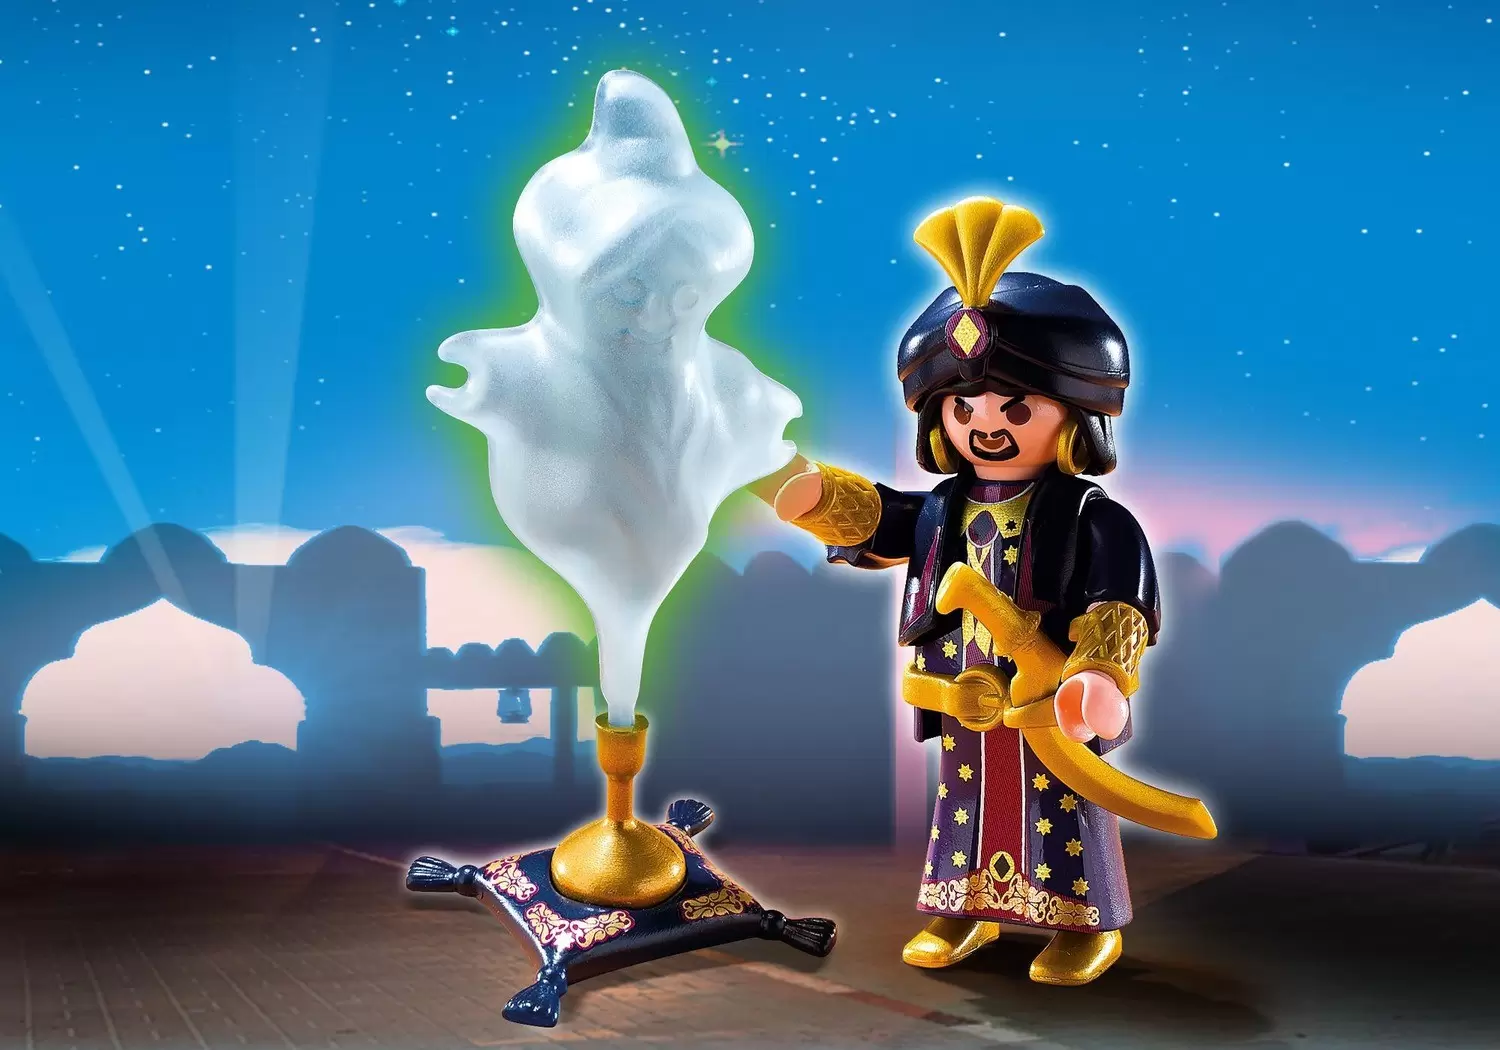 Playmobil SpecialPlus - Magician with Genie Lamp